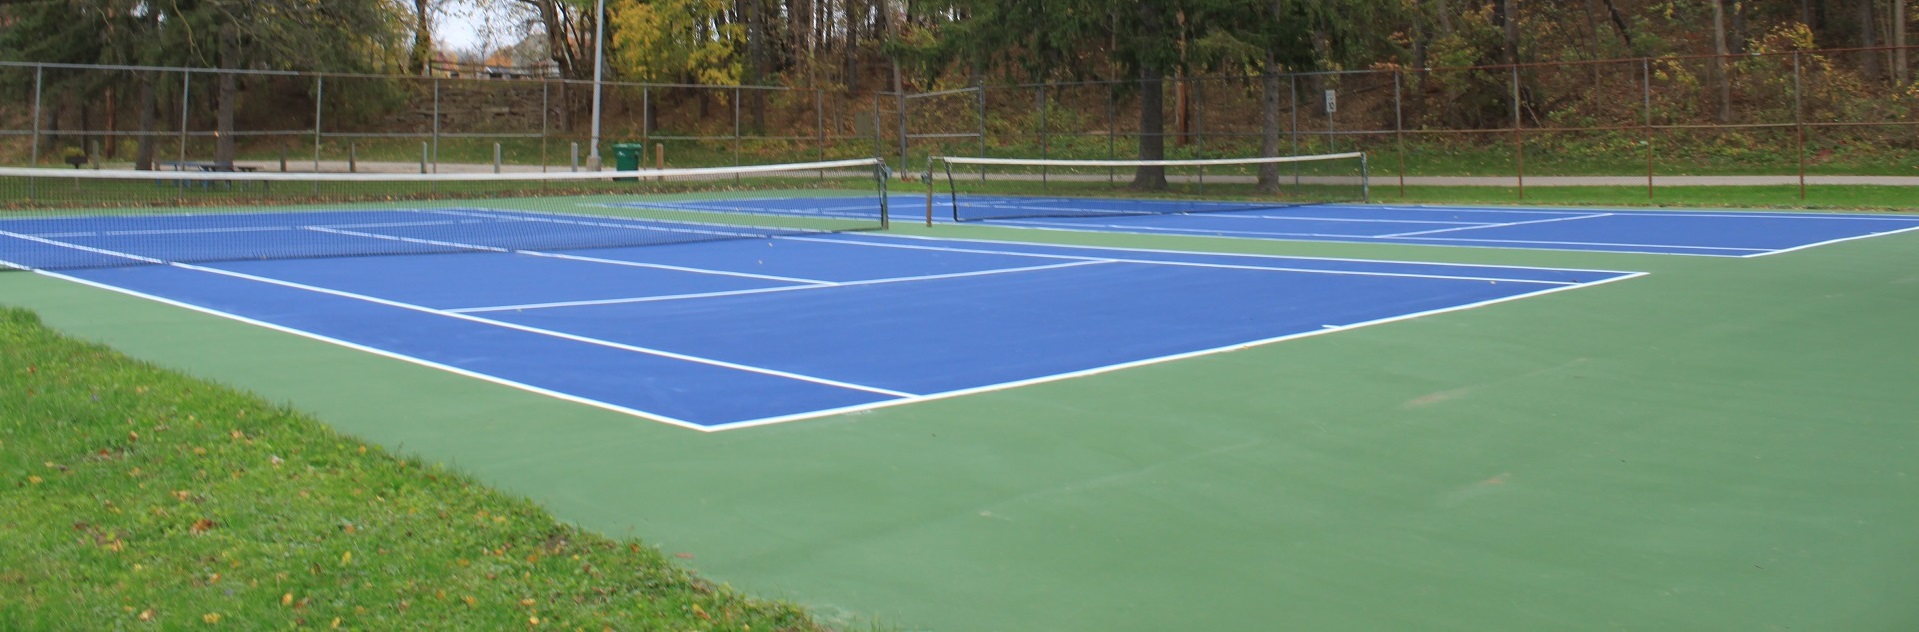 Hardcourt_tennis_court_curtiss_park_saline_michigan.jpg